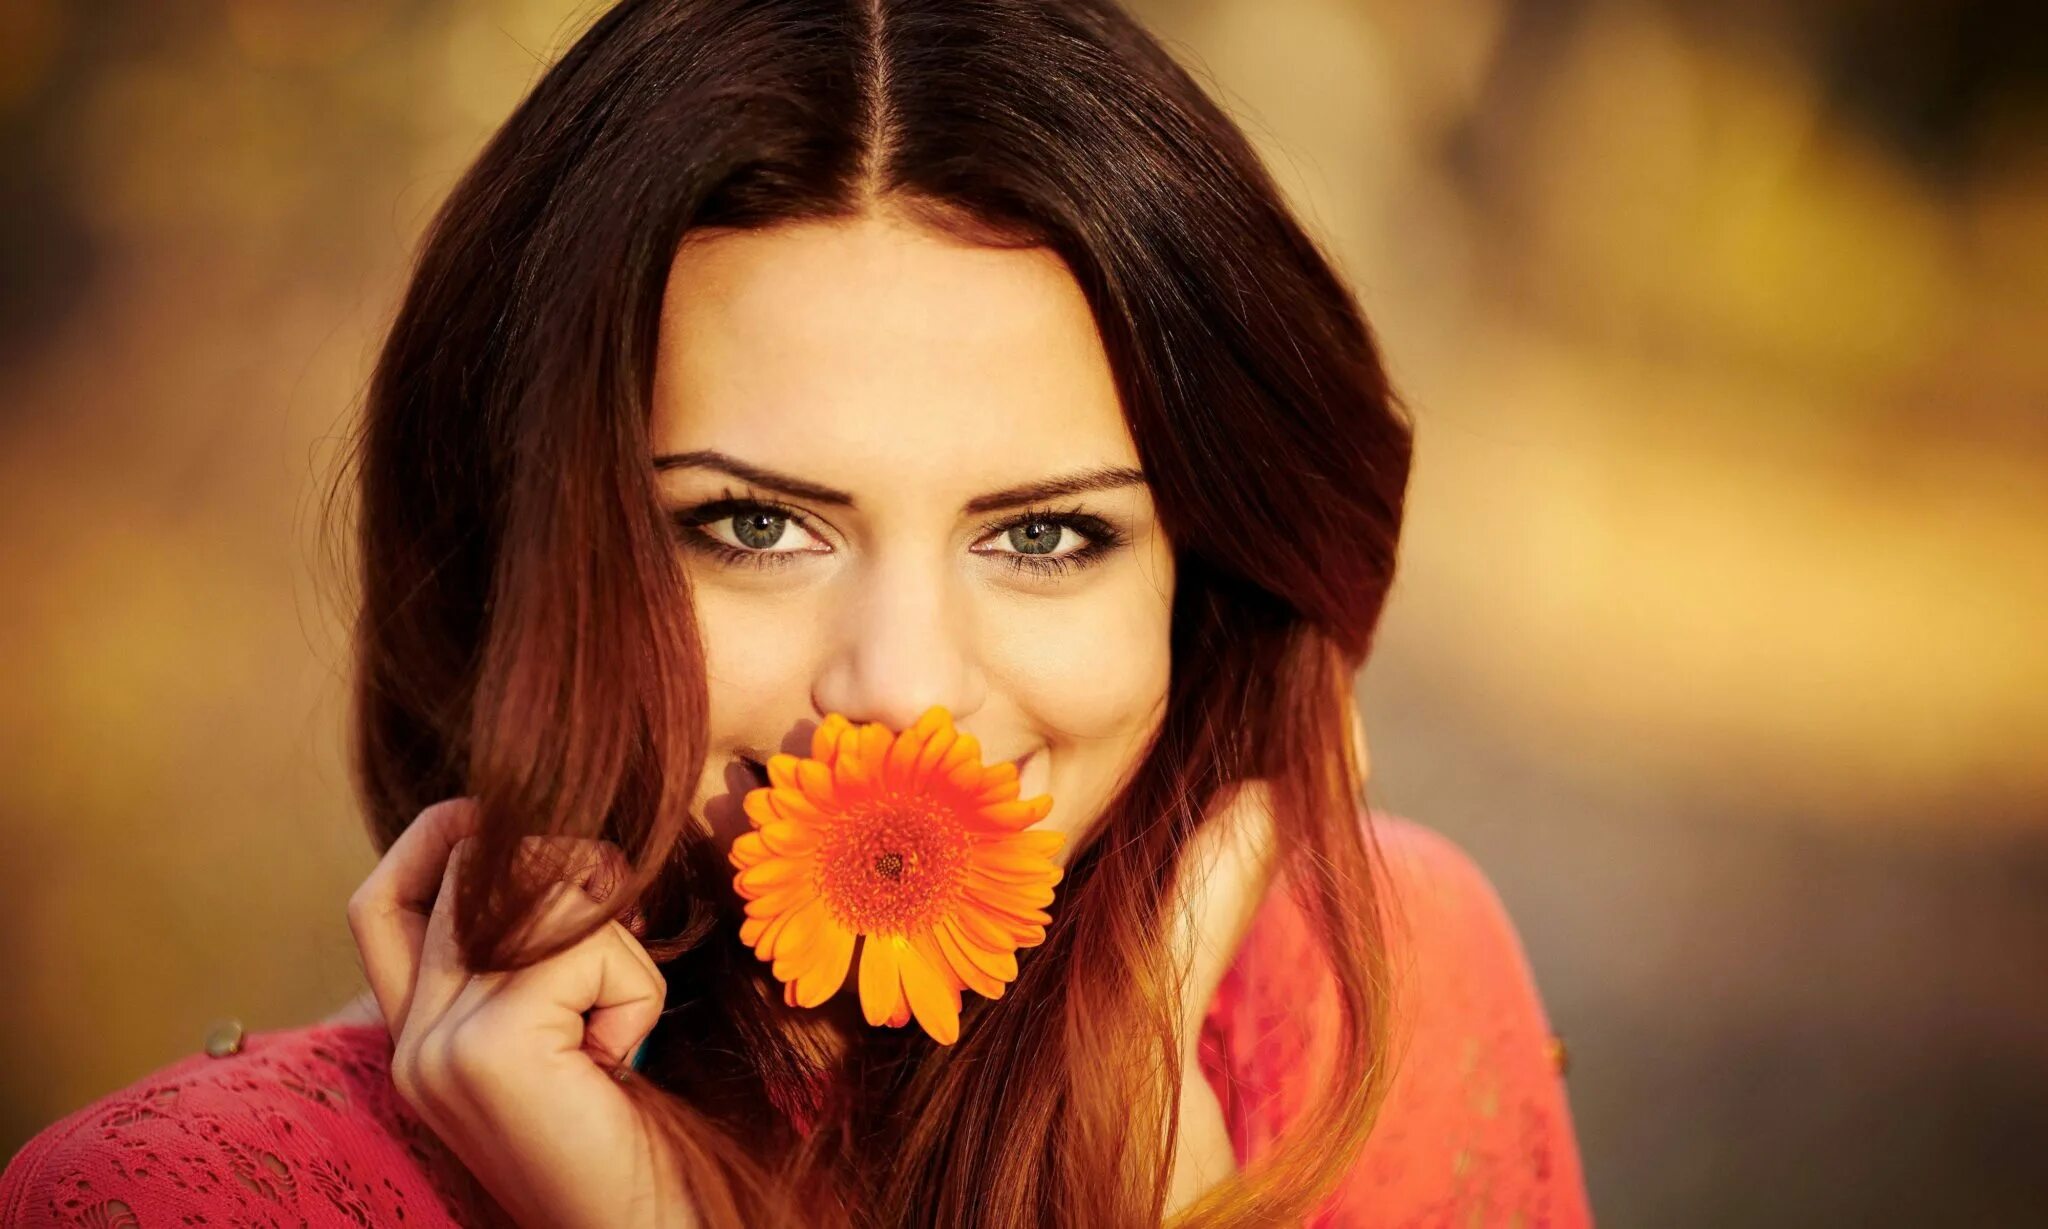 Красивая девушка изображение. Красивая женщина с цветами. Девушка с цветком. Красивые фотосессии девушек. Улыбка девушки.